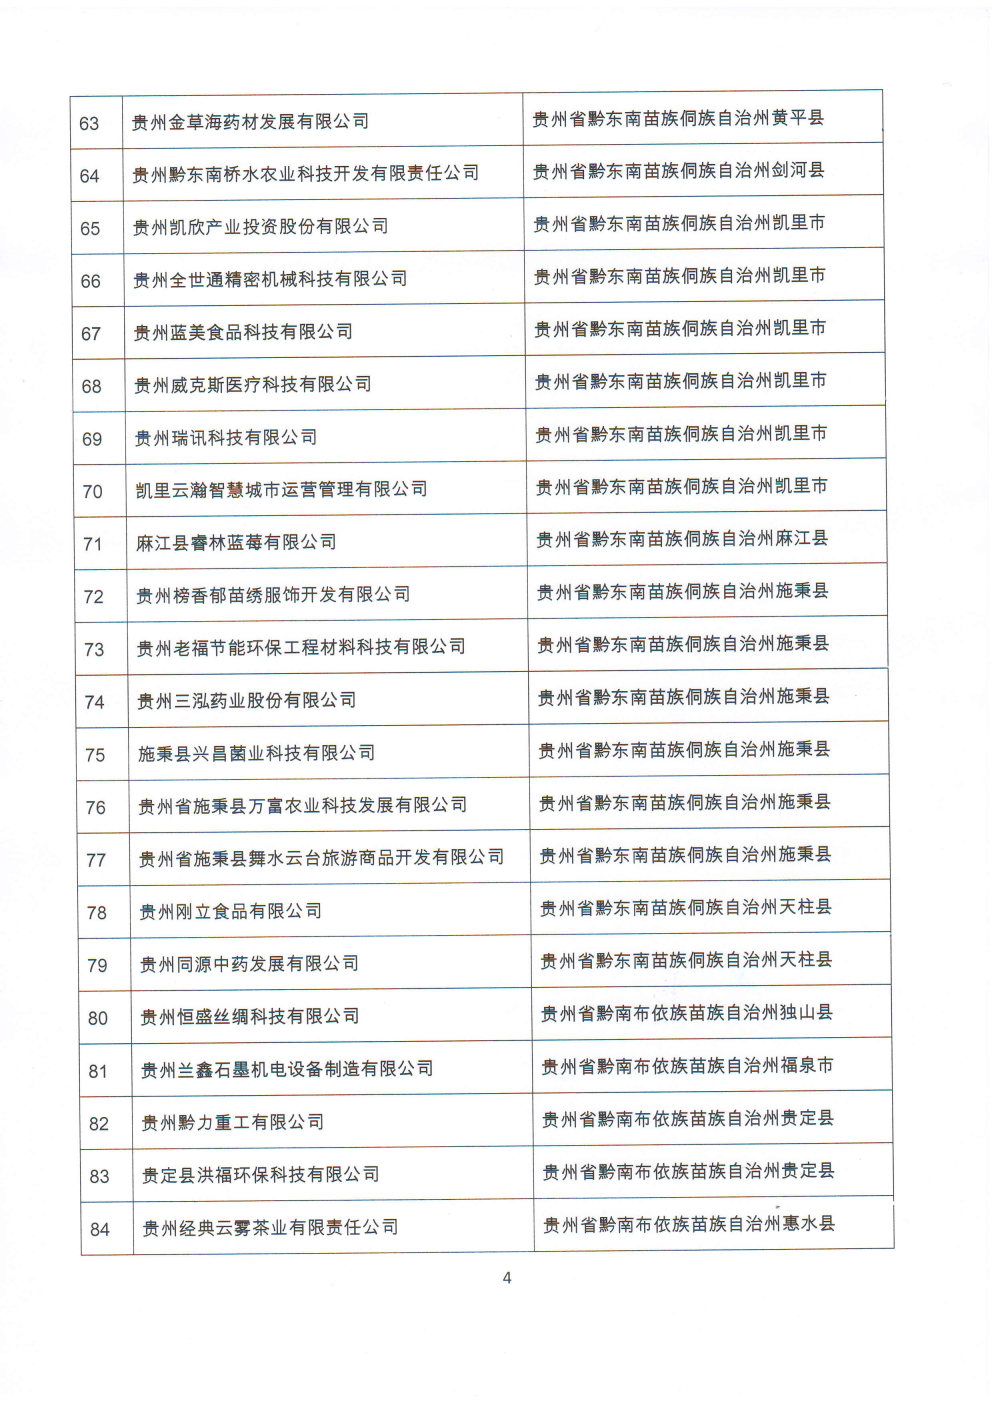 附件：贵州省2020年第三批拟入库科技型中小企业名单_Page4_Image1.jpg